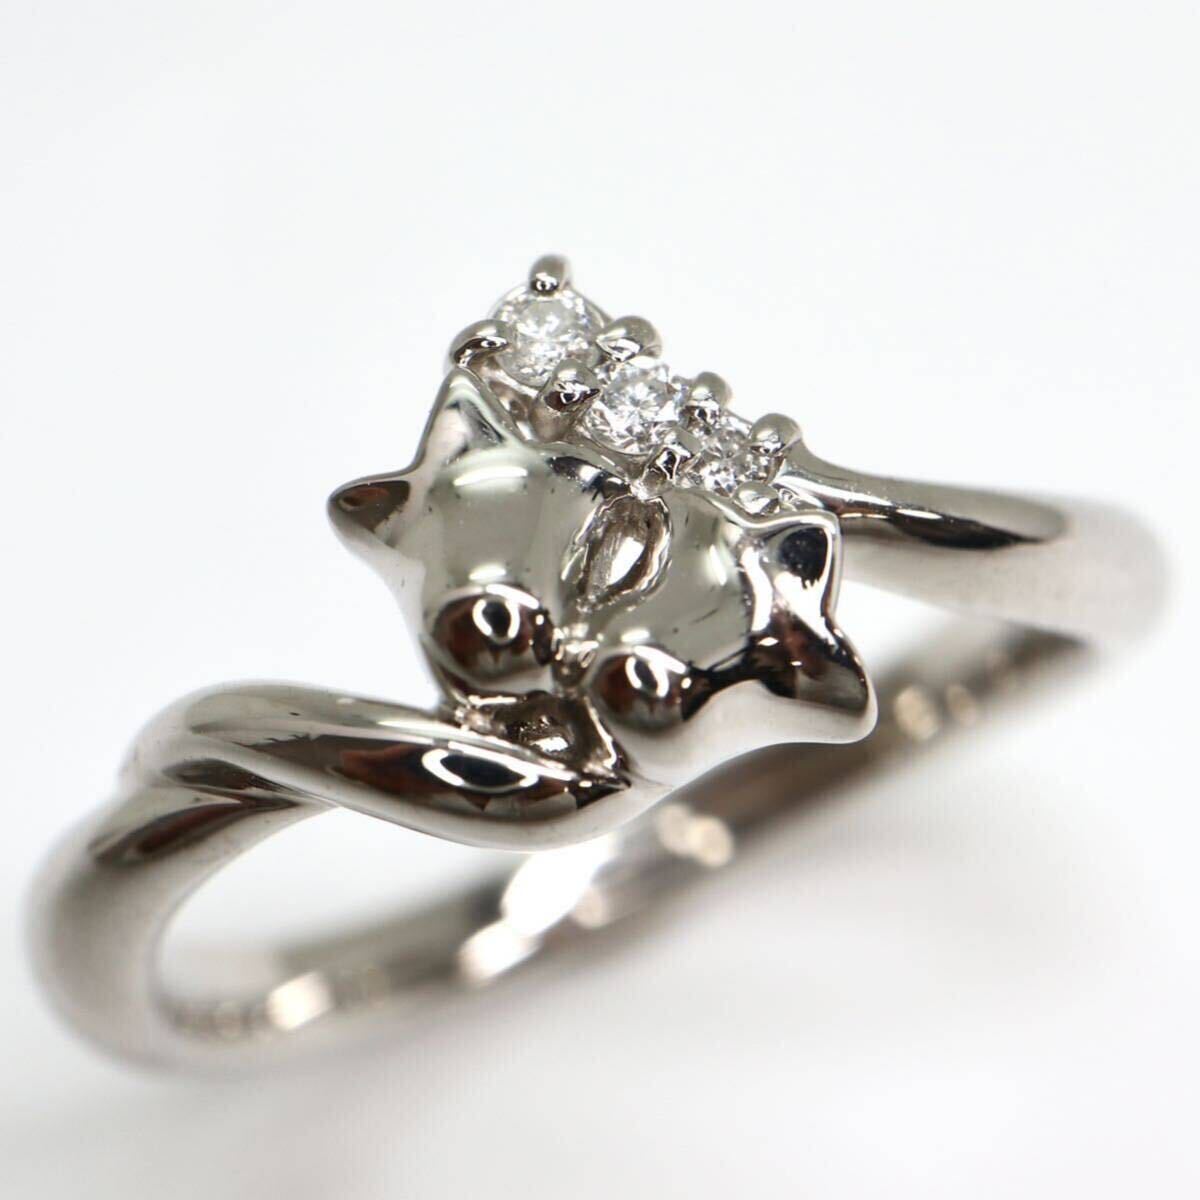 Christian Dior(ディオール)《Pt900 天然ダイヤモンドリング》 A ●約4.7g 約11号 指輪 ring diamond jewelry ジュエリー EB3/EB3の画像2